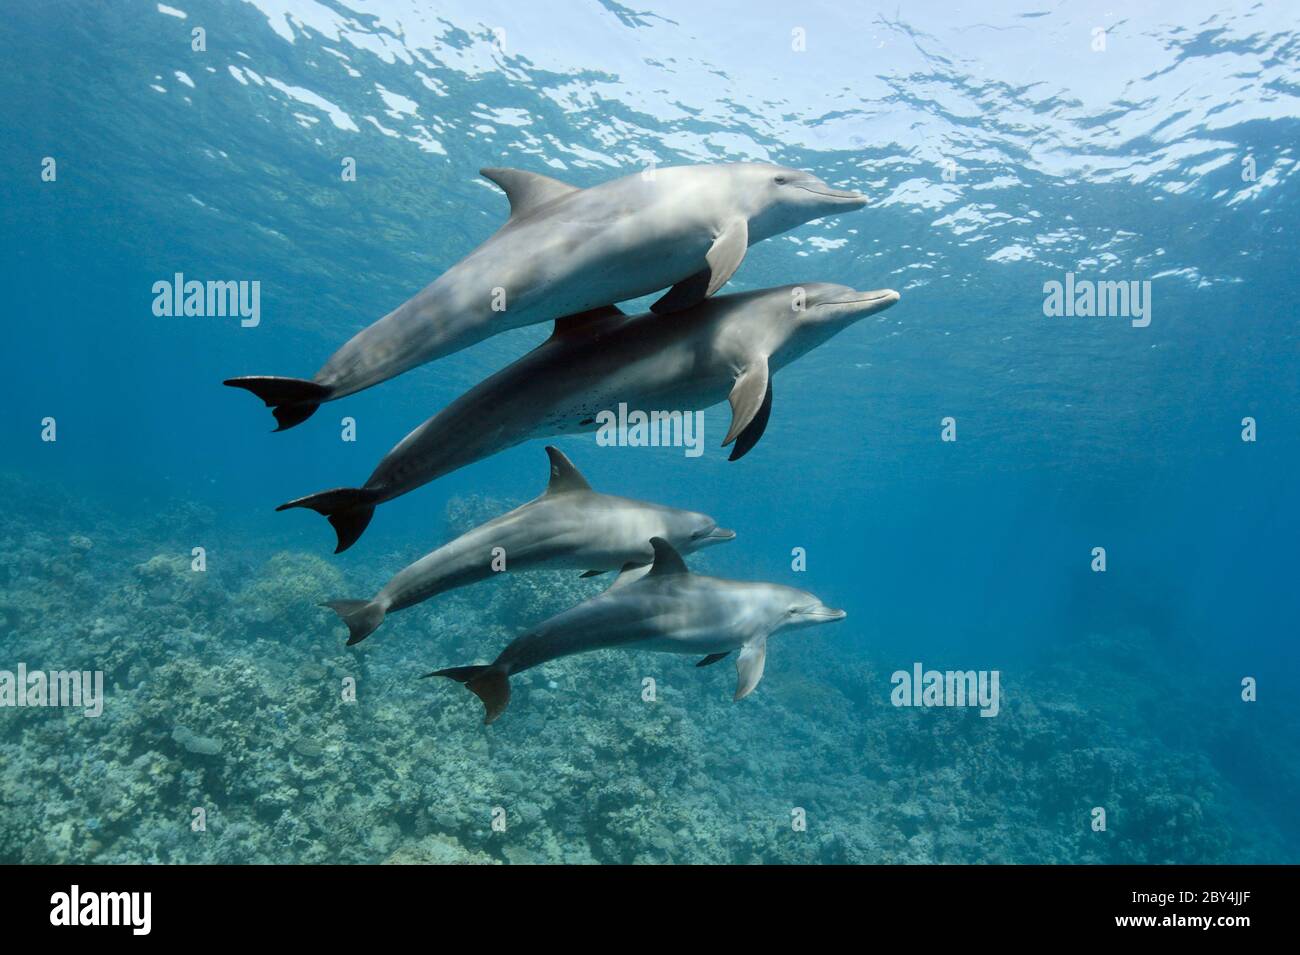 Una famiglia di delfini tursiopi selvatici indoPacifico (Tursiops aduncus) sta giocando di fronte alla fotocamera subacquea nel Mar Rosso. Foto Stock